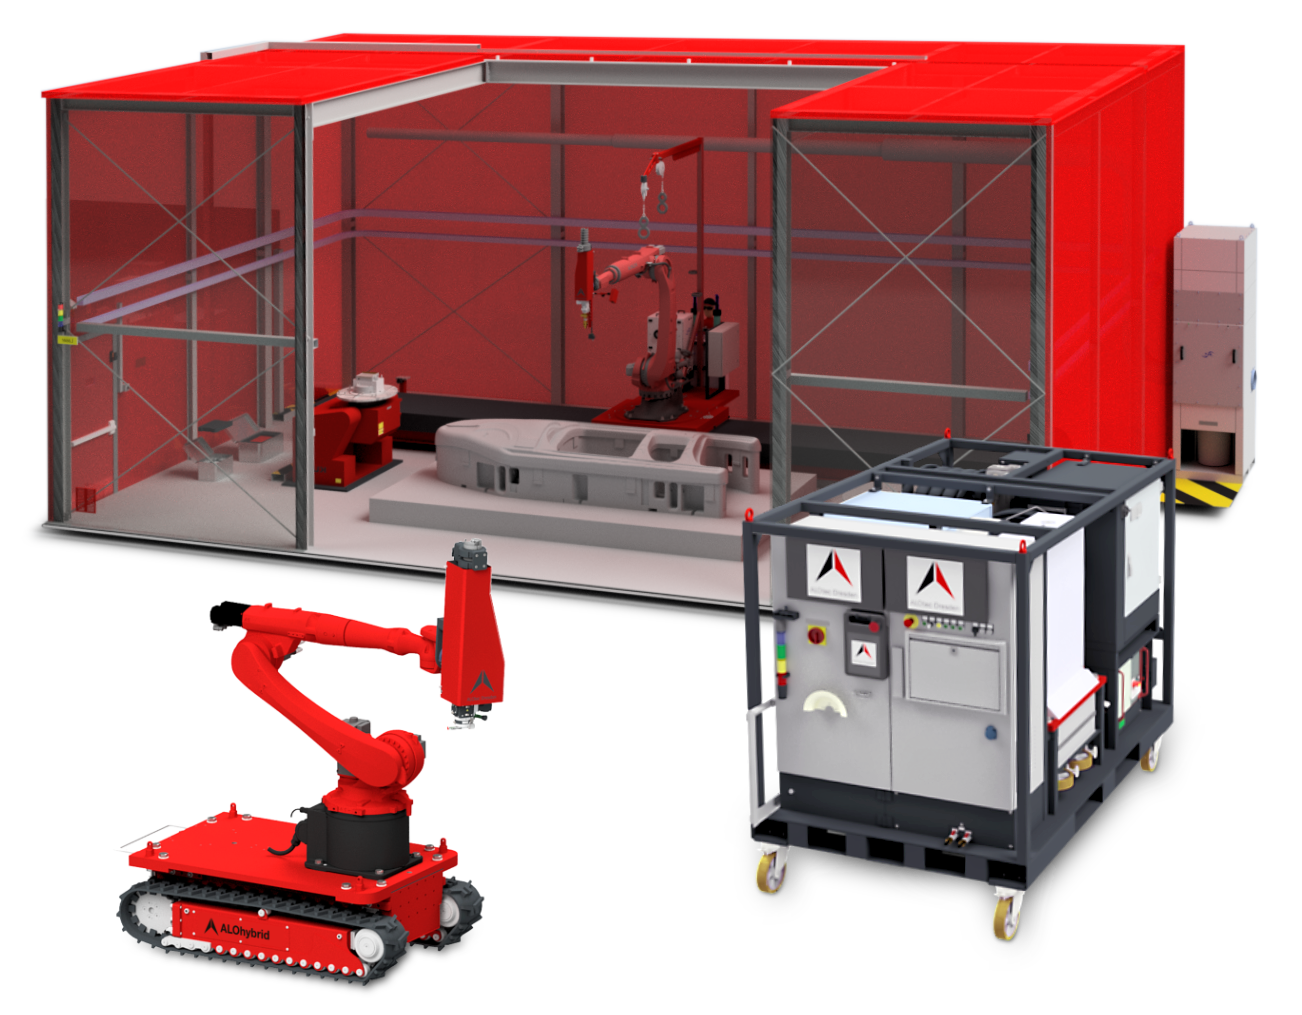 Anlagenbau für Laseranlagen mit Roboter und Lineareinheit in einer Laserschutzkabine, mobiler Medienstation und mobiler Roboteranlage im Anlagenbau